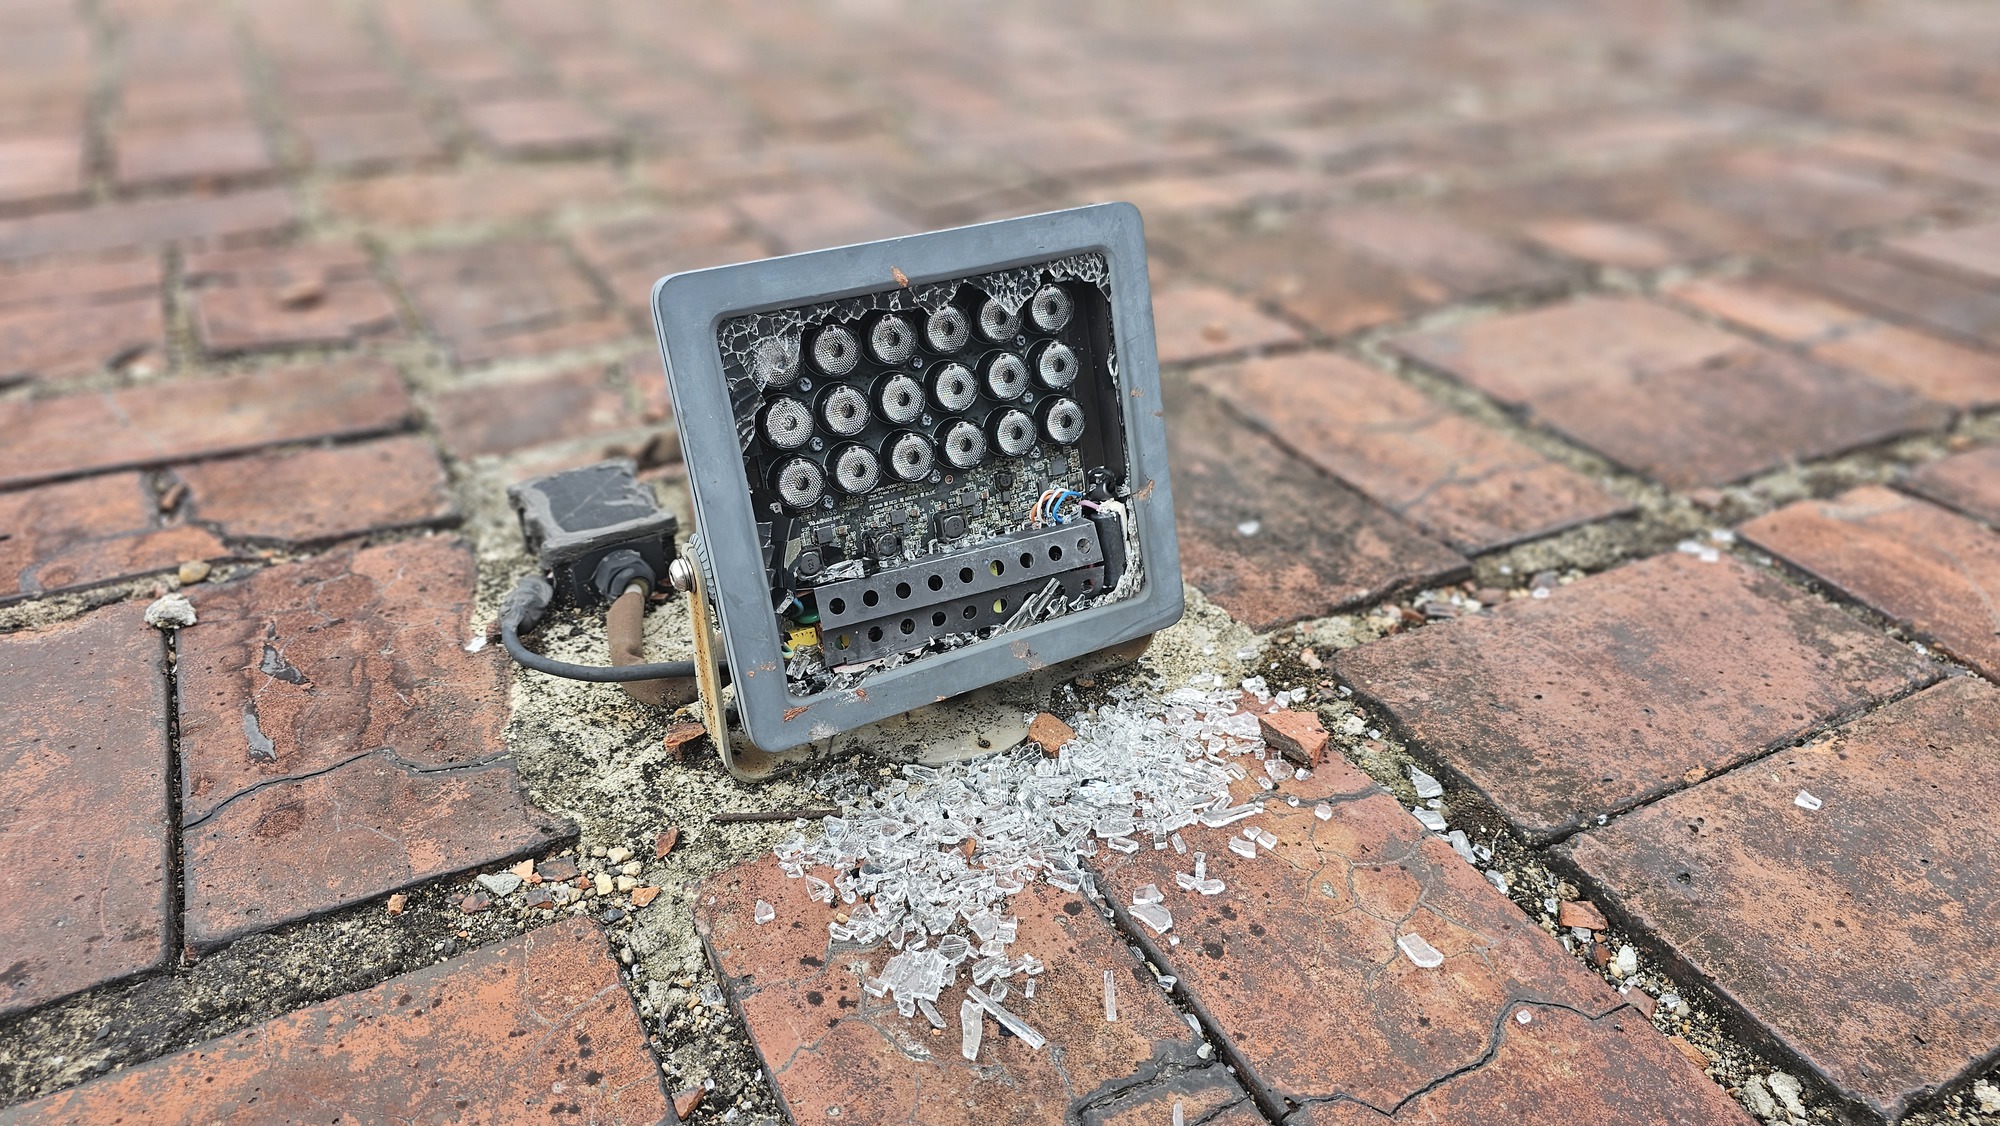 Hàng loạt bộ đèn LED ở di tích Kỳ đài Huế bị đập vỡ - Ảnh 2.